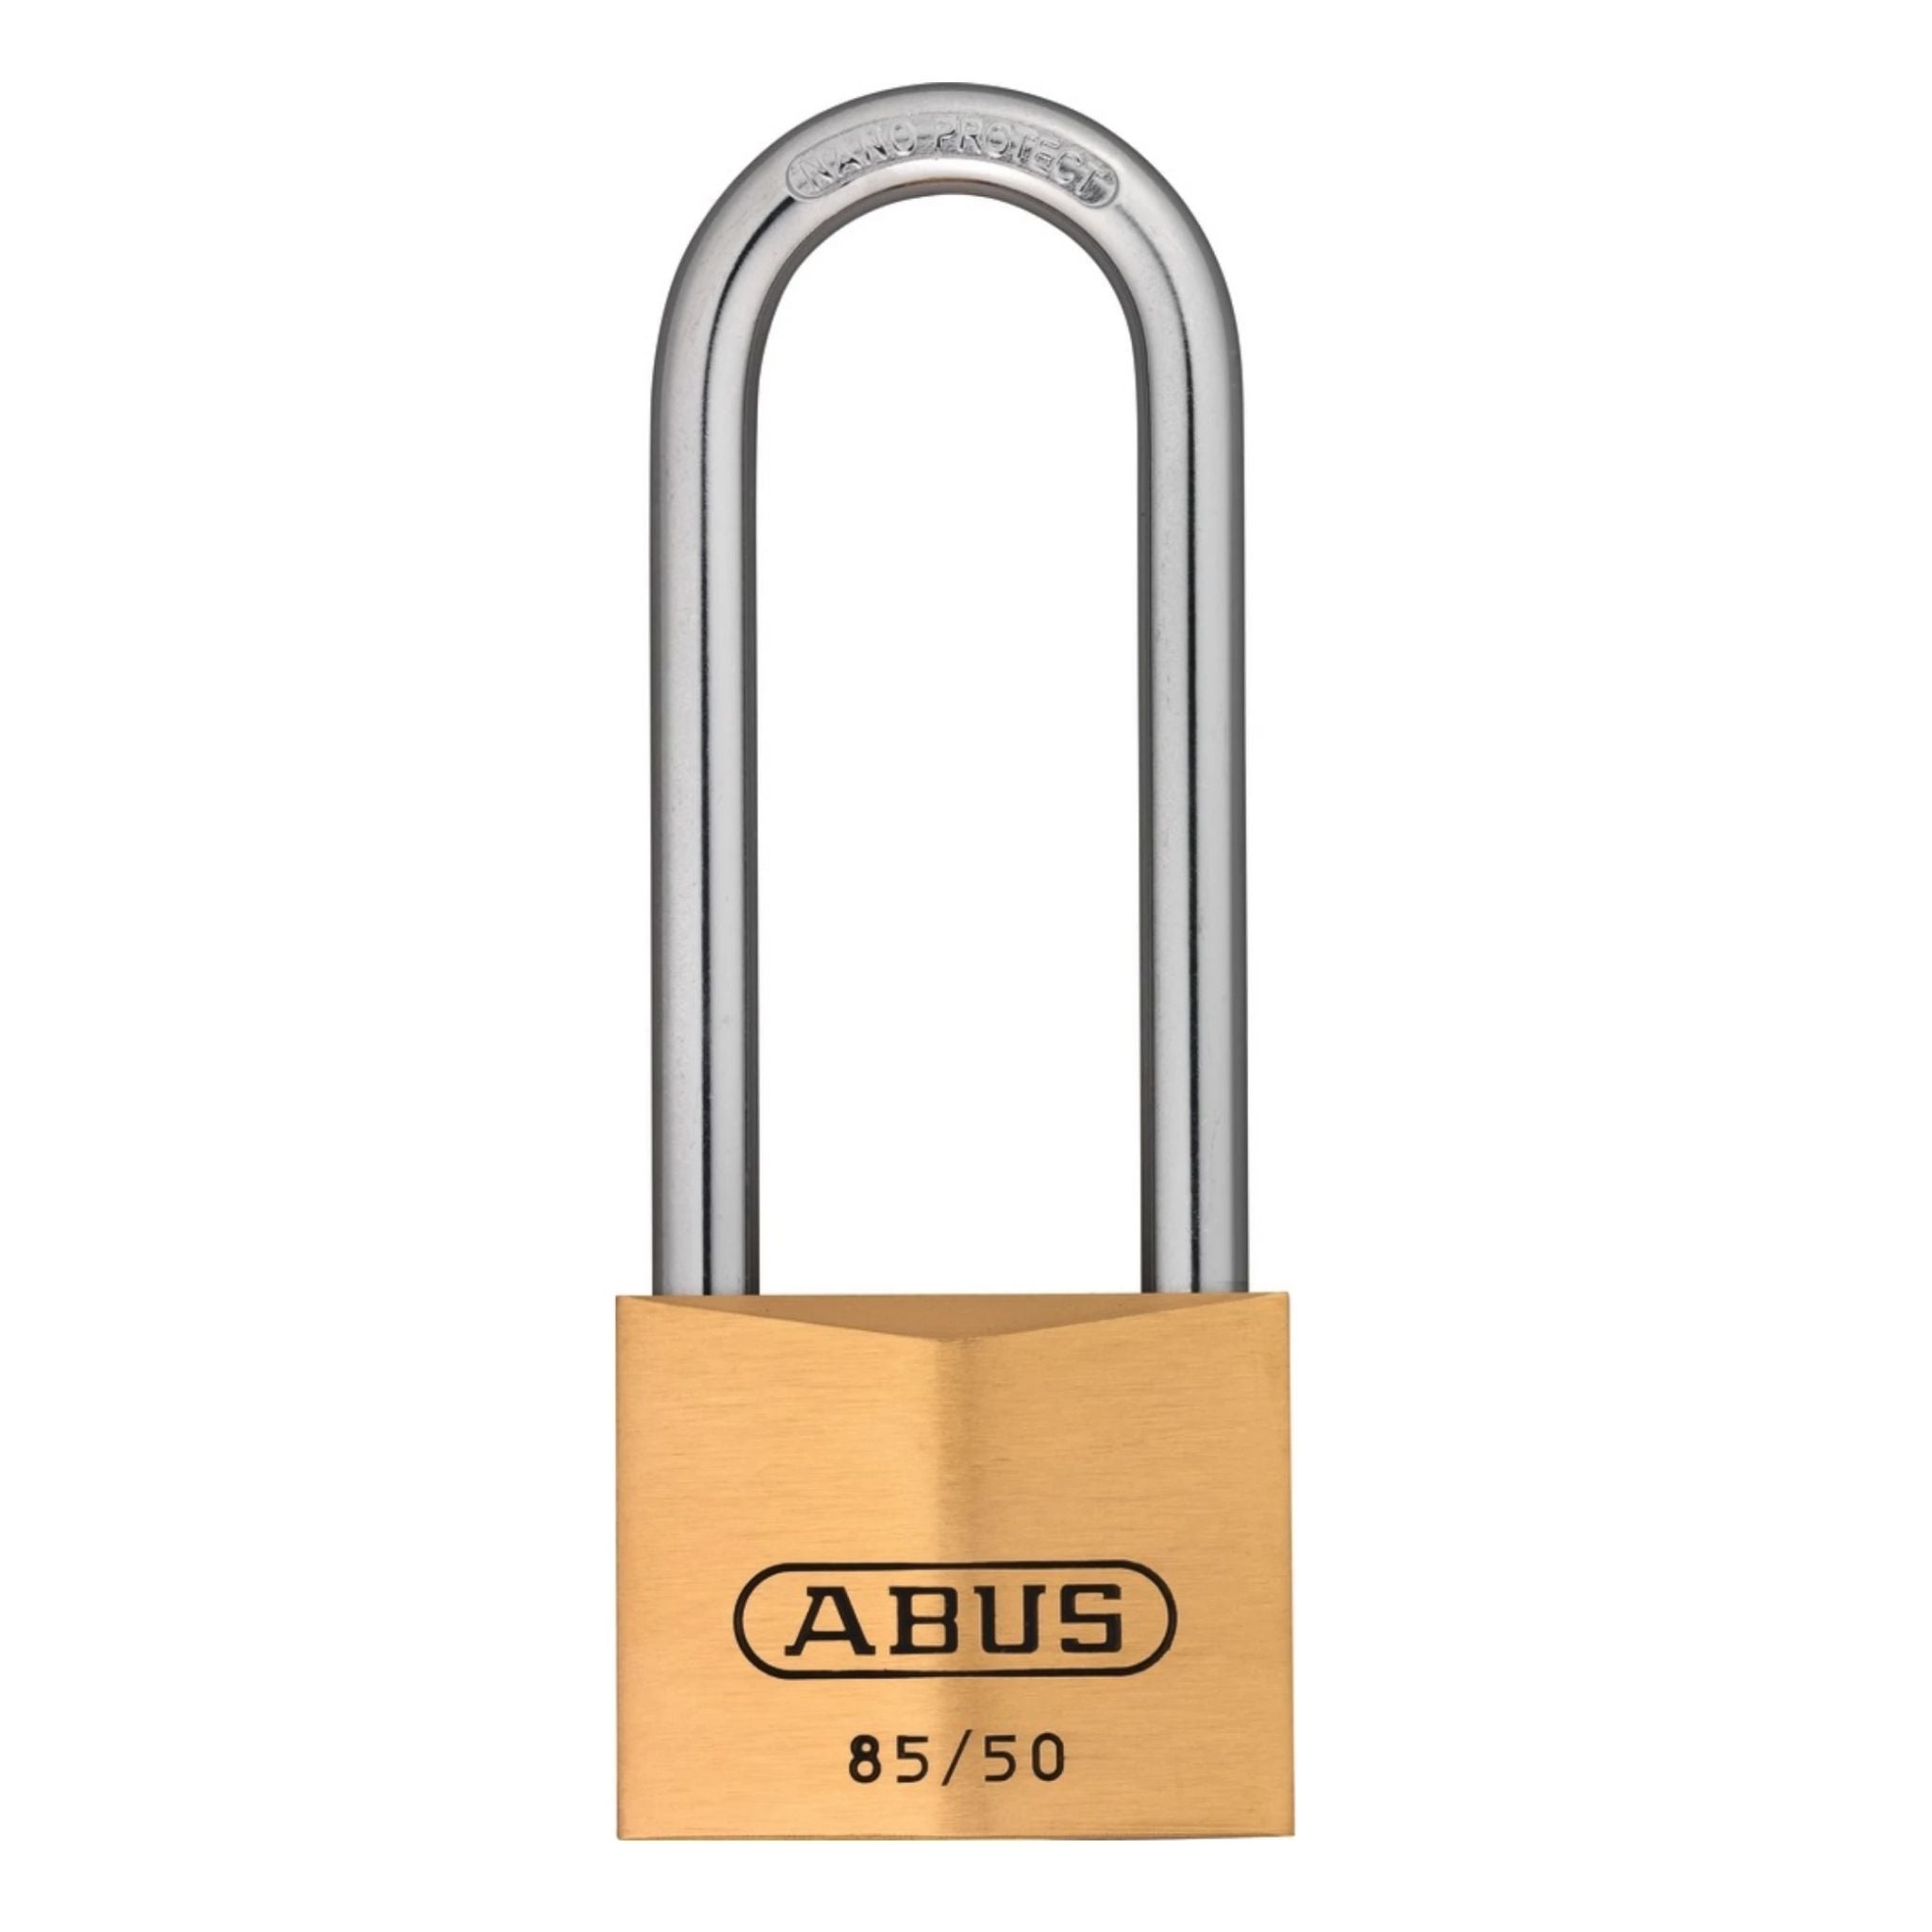 Abus 85/50HB80 KA 1055 Brass Padlock with 3-Inch Shackle Keyed Alike to  Key# KA1055